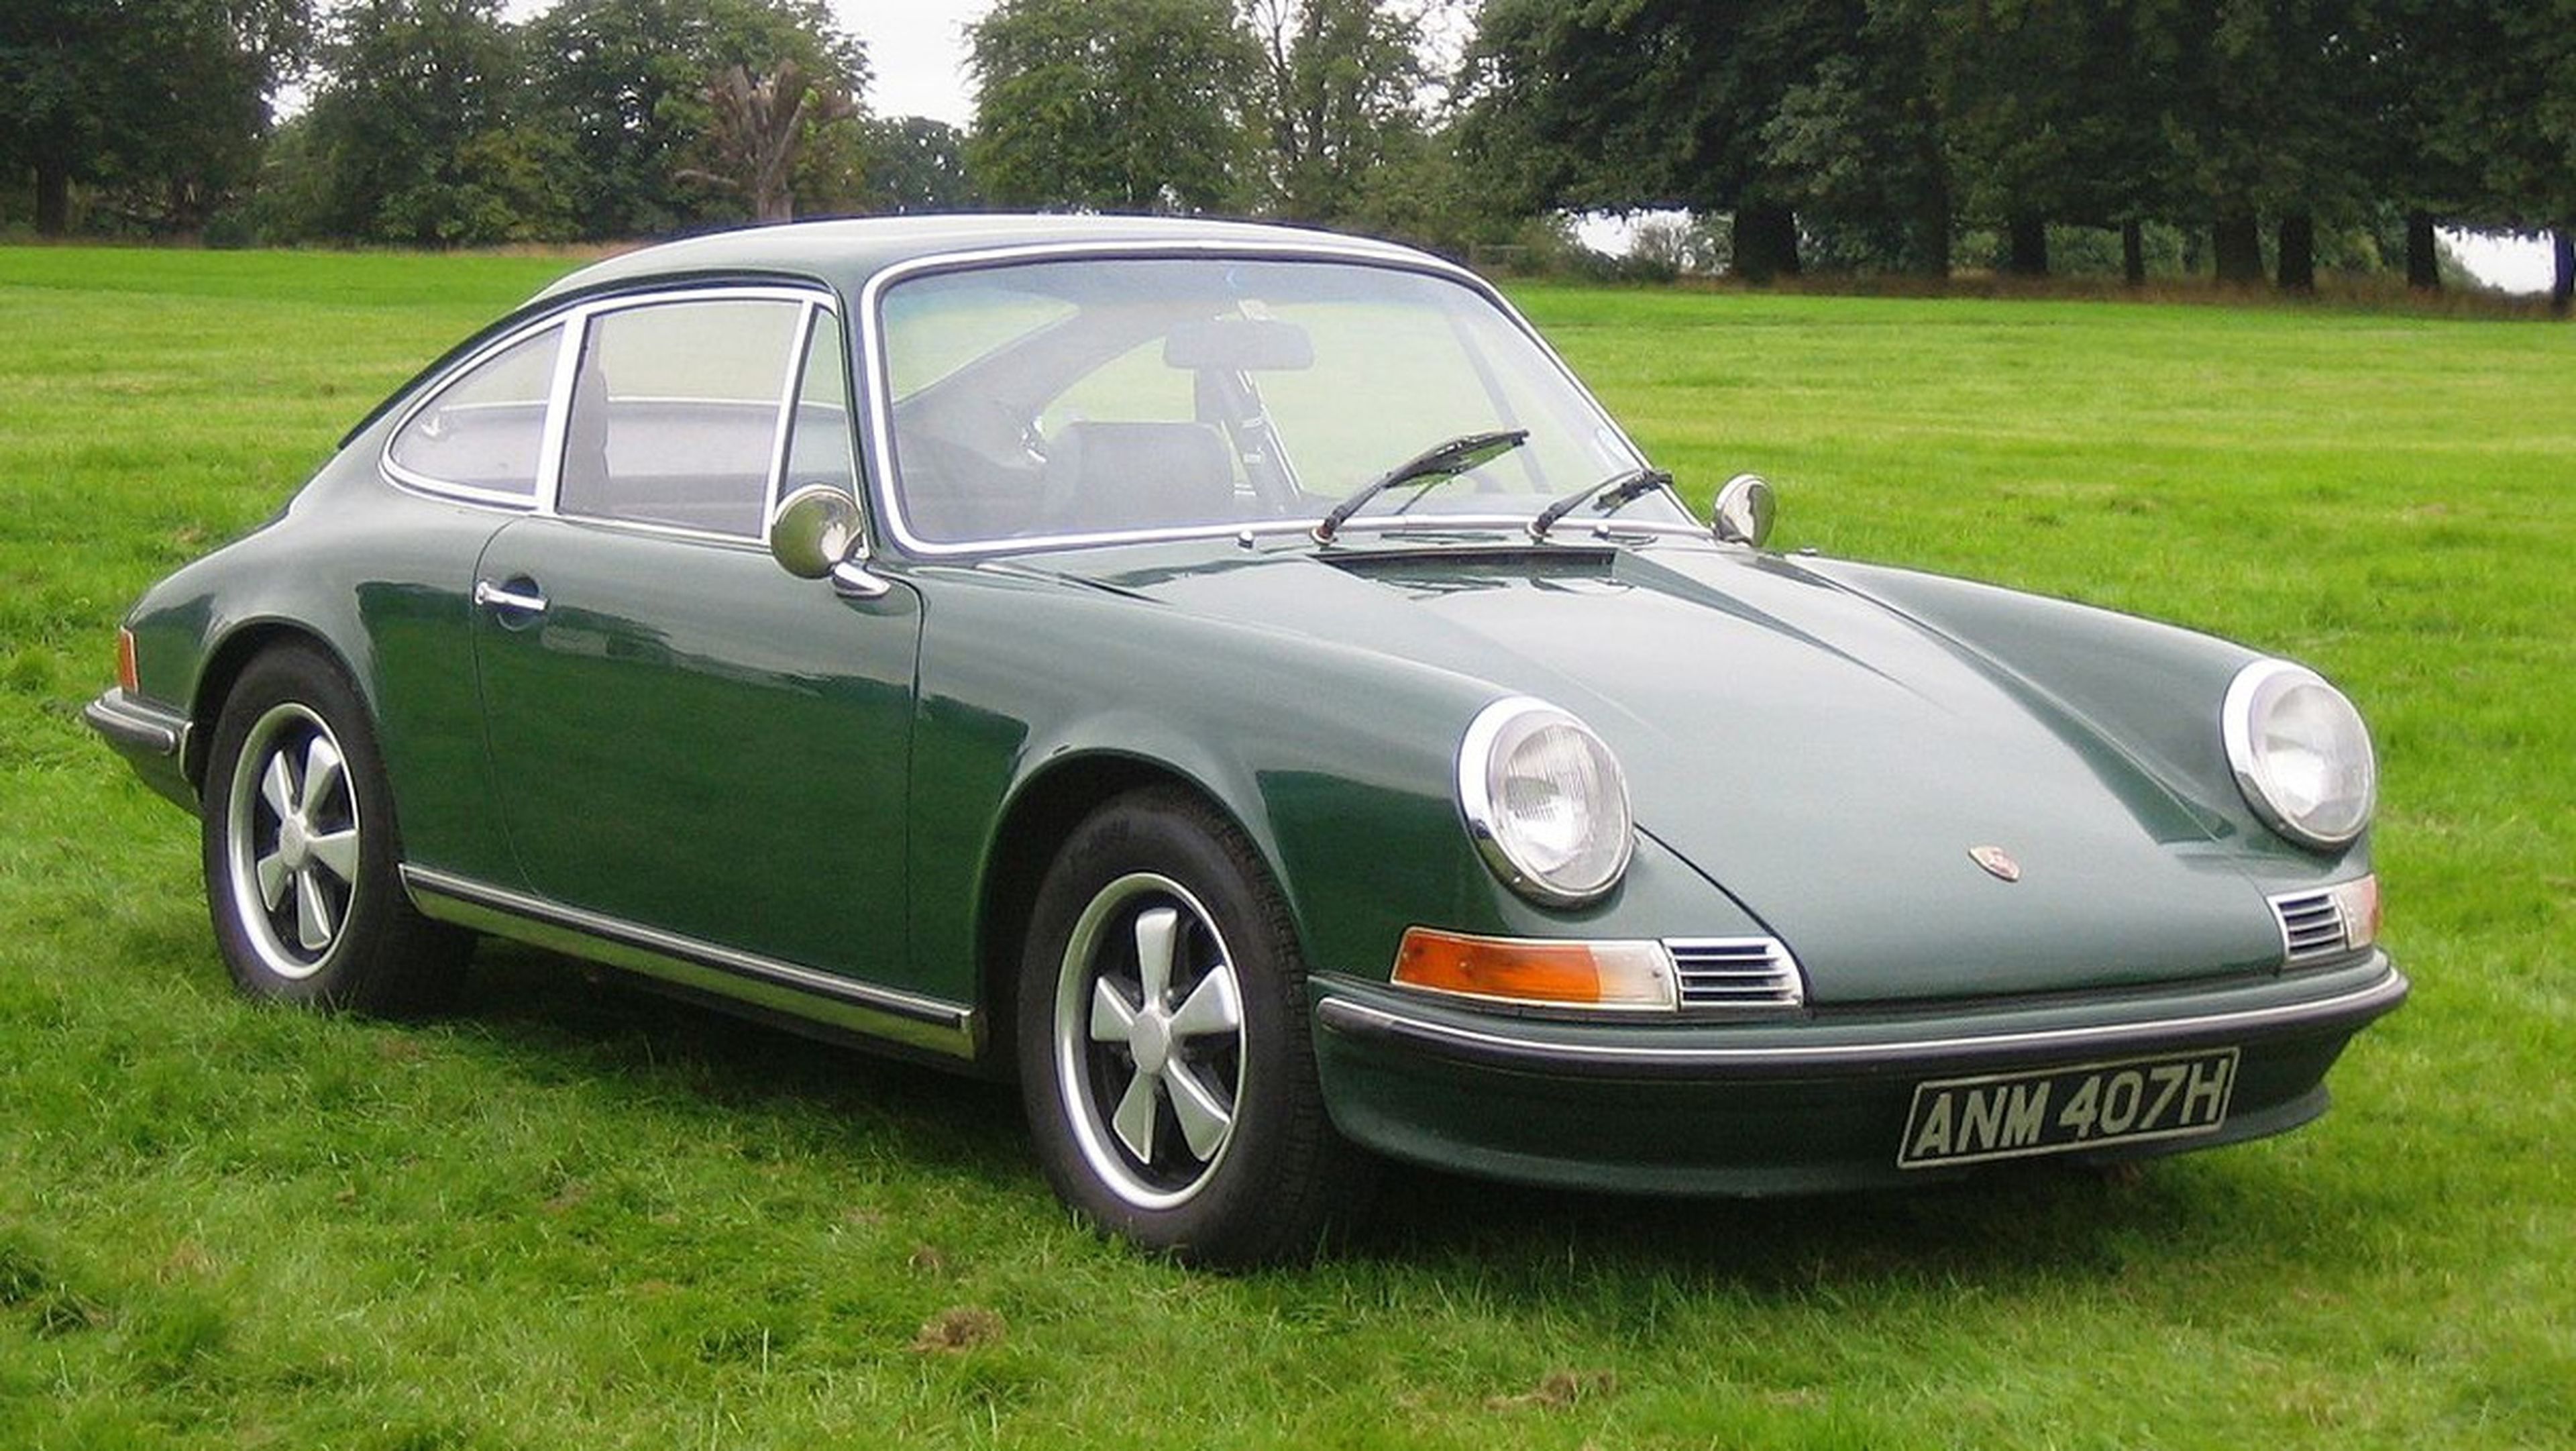 Porsche 911 1969 Wiki de Charles01